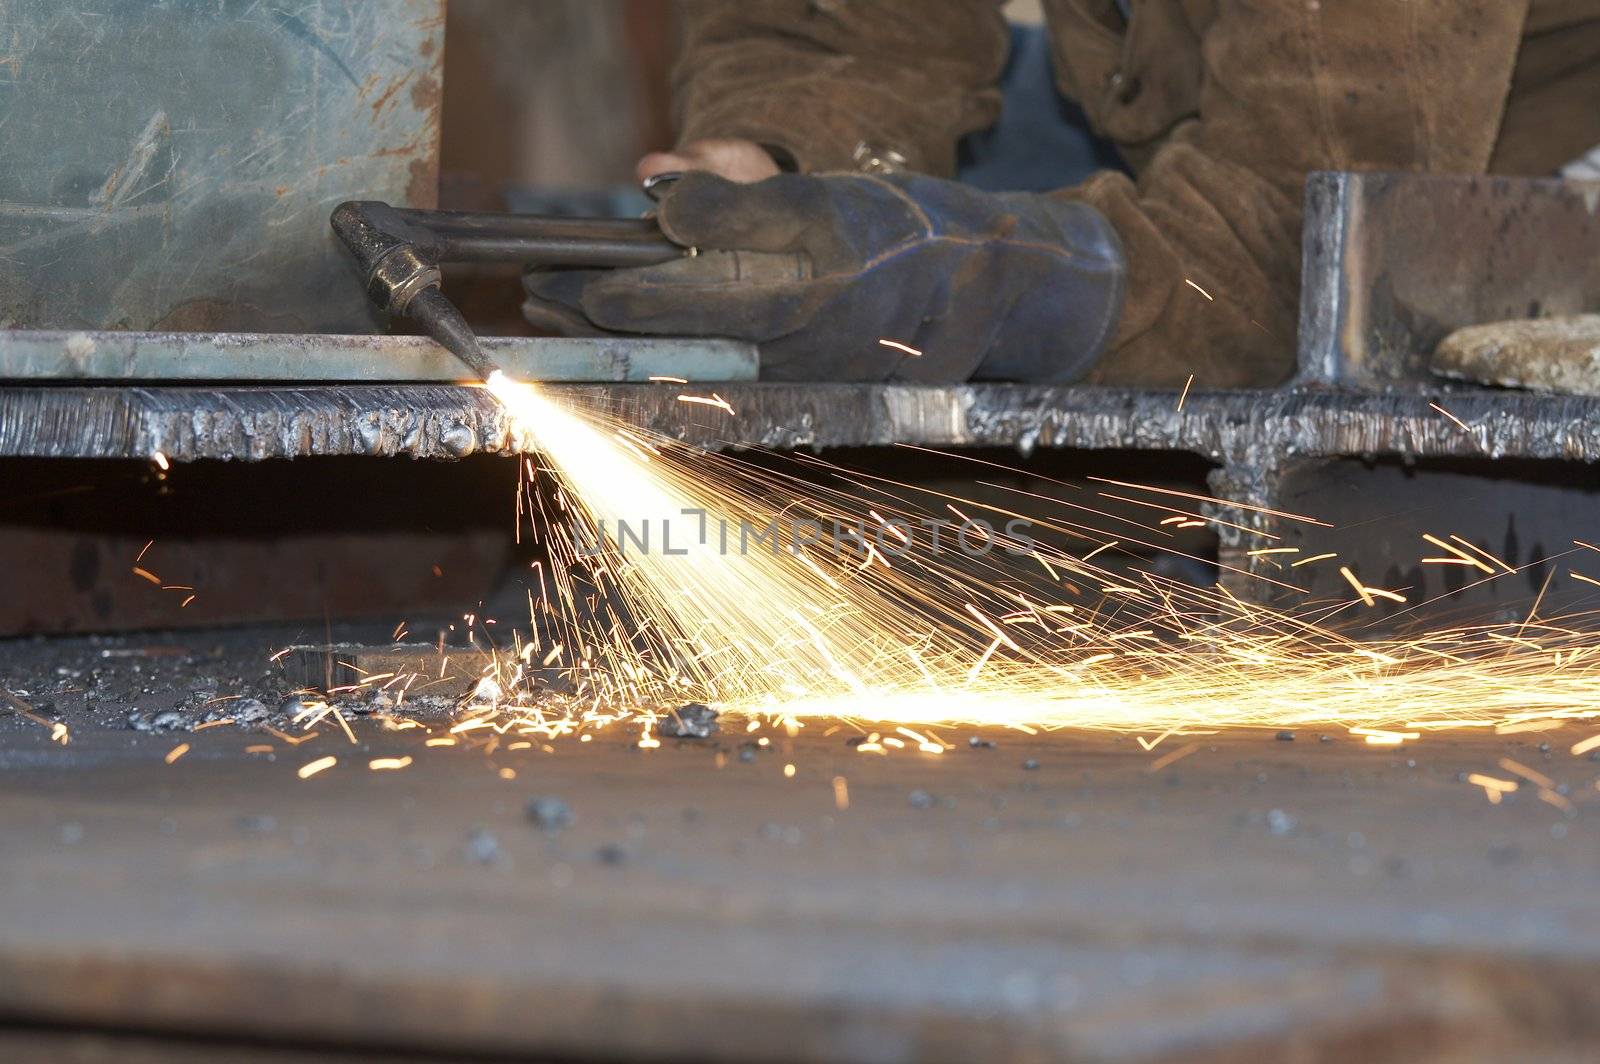 a shipyard steel worker burning steel